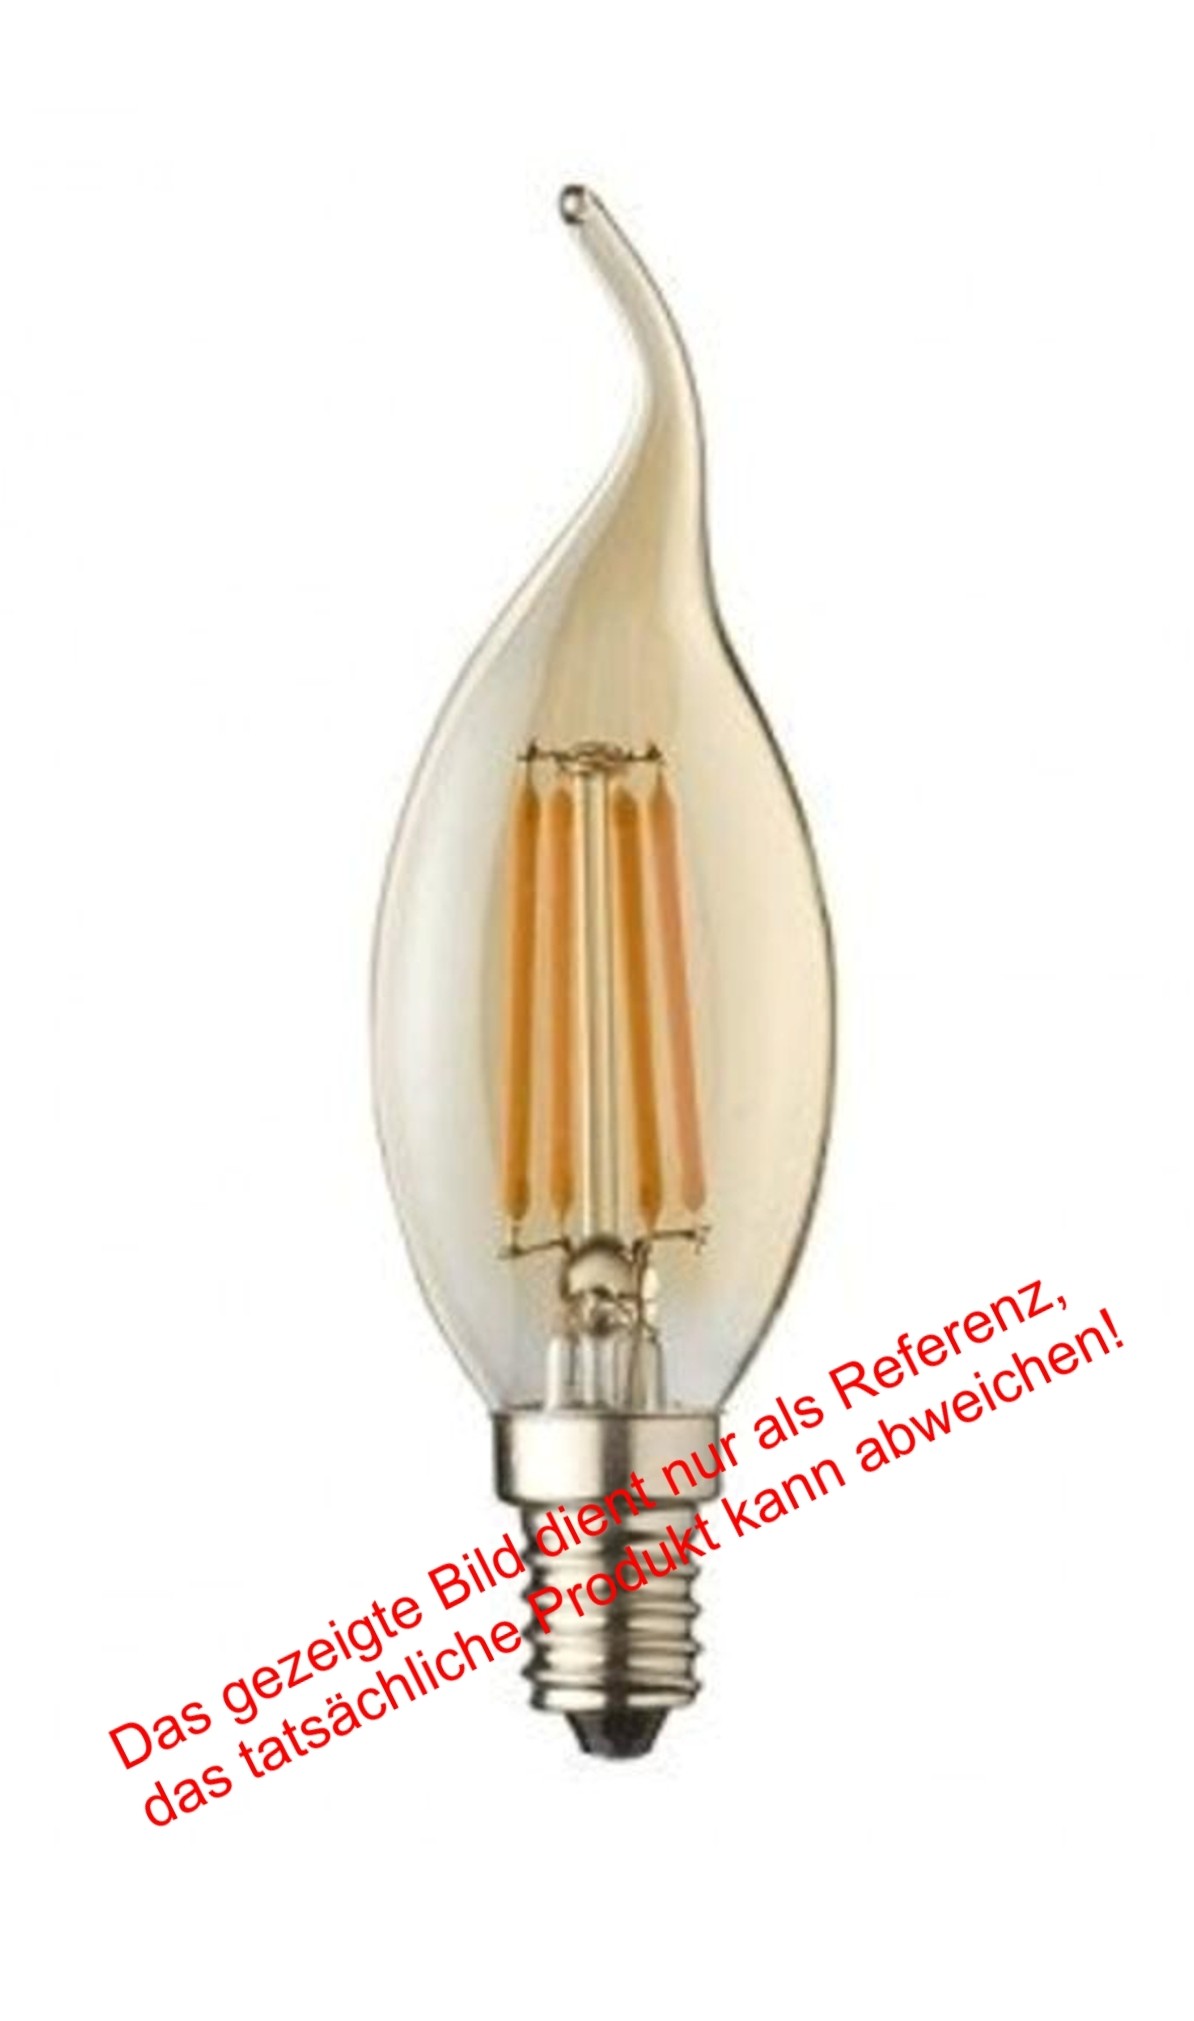 Civilight F35 KF40T4- 1064 6901029010640 Kugel Bulb Globe 230 Volt 4W 350lm 2200K warmweiss Referenz